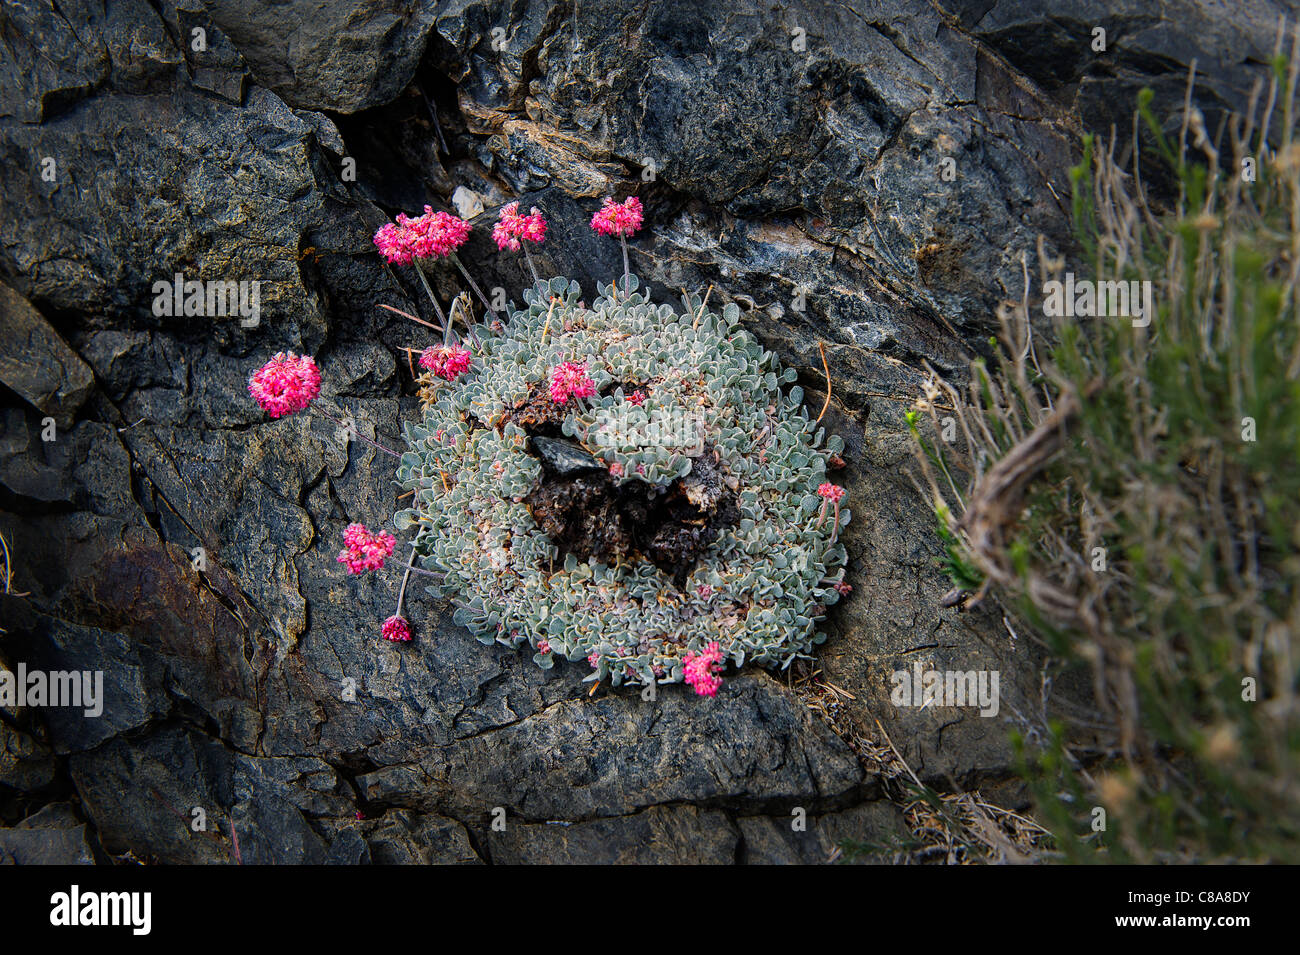 Eriogonum ovalifolium (Cushion Buckwheat), Polygonaceae, in rocky habitat; Sierra Nevada, California, U.S.A. Stock Photo